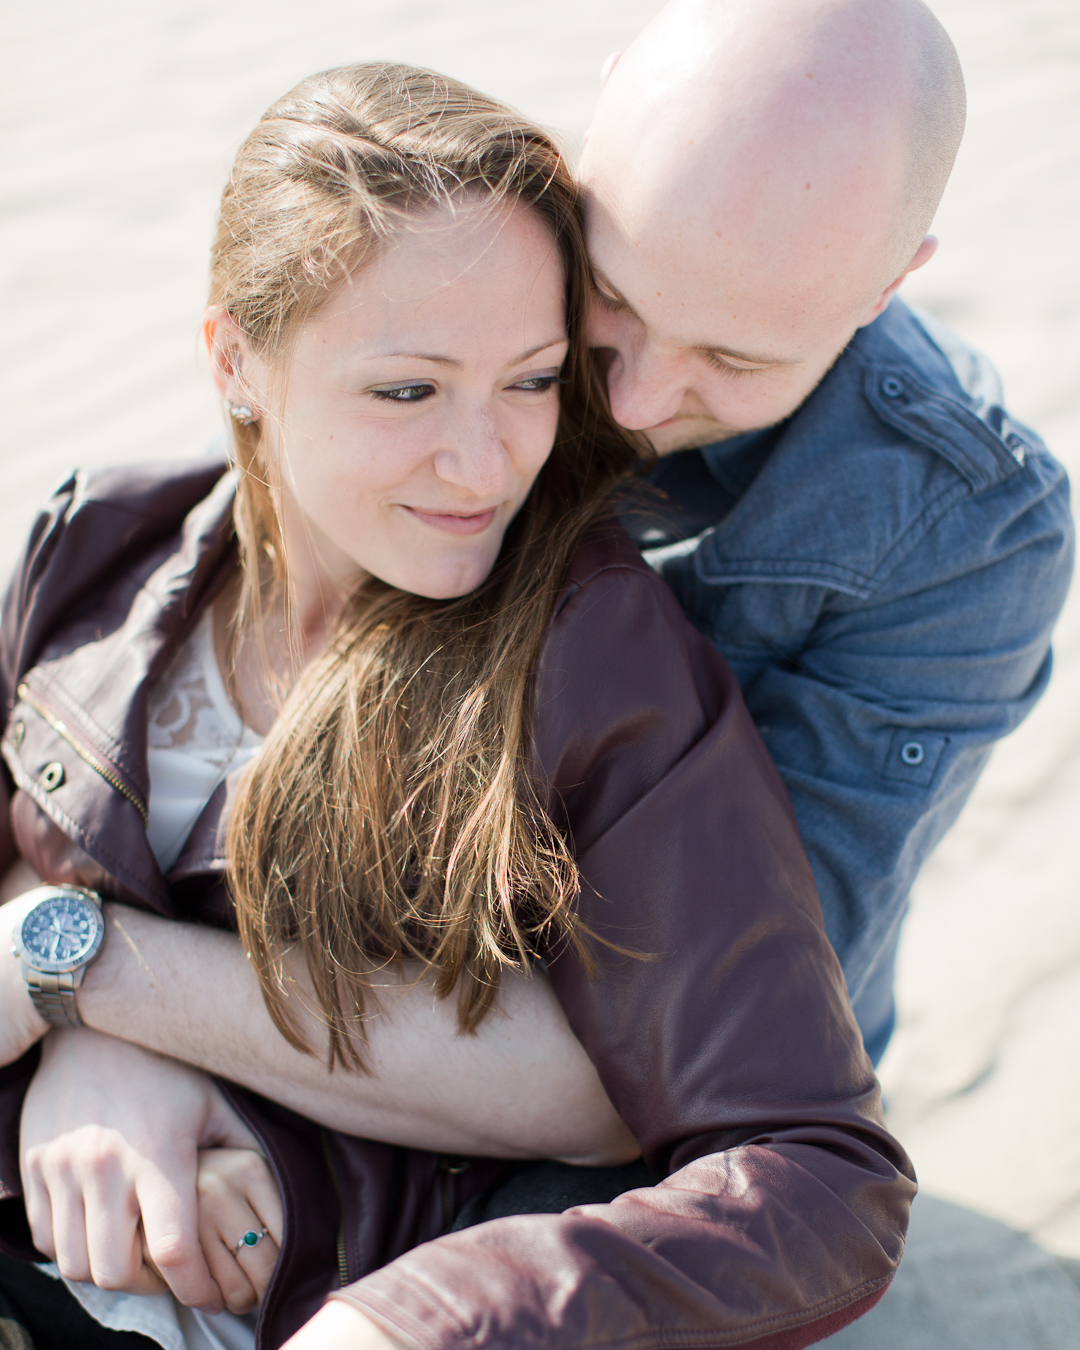 Melissa Kruse Photography - Amanda + Kevin Coney Island Engagement Photos-8.jpg